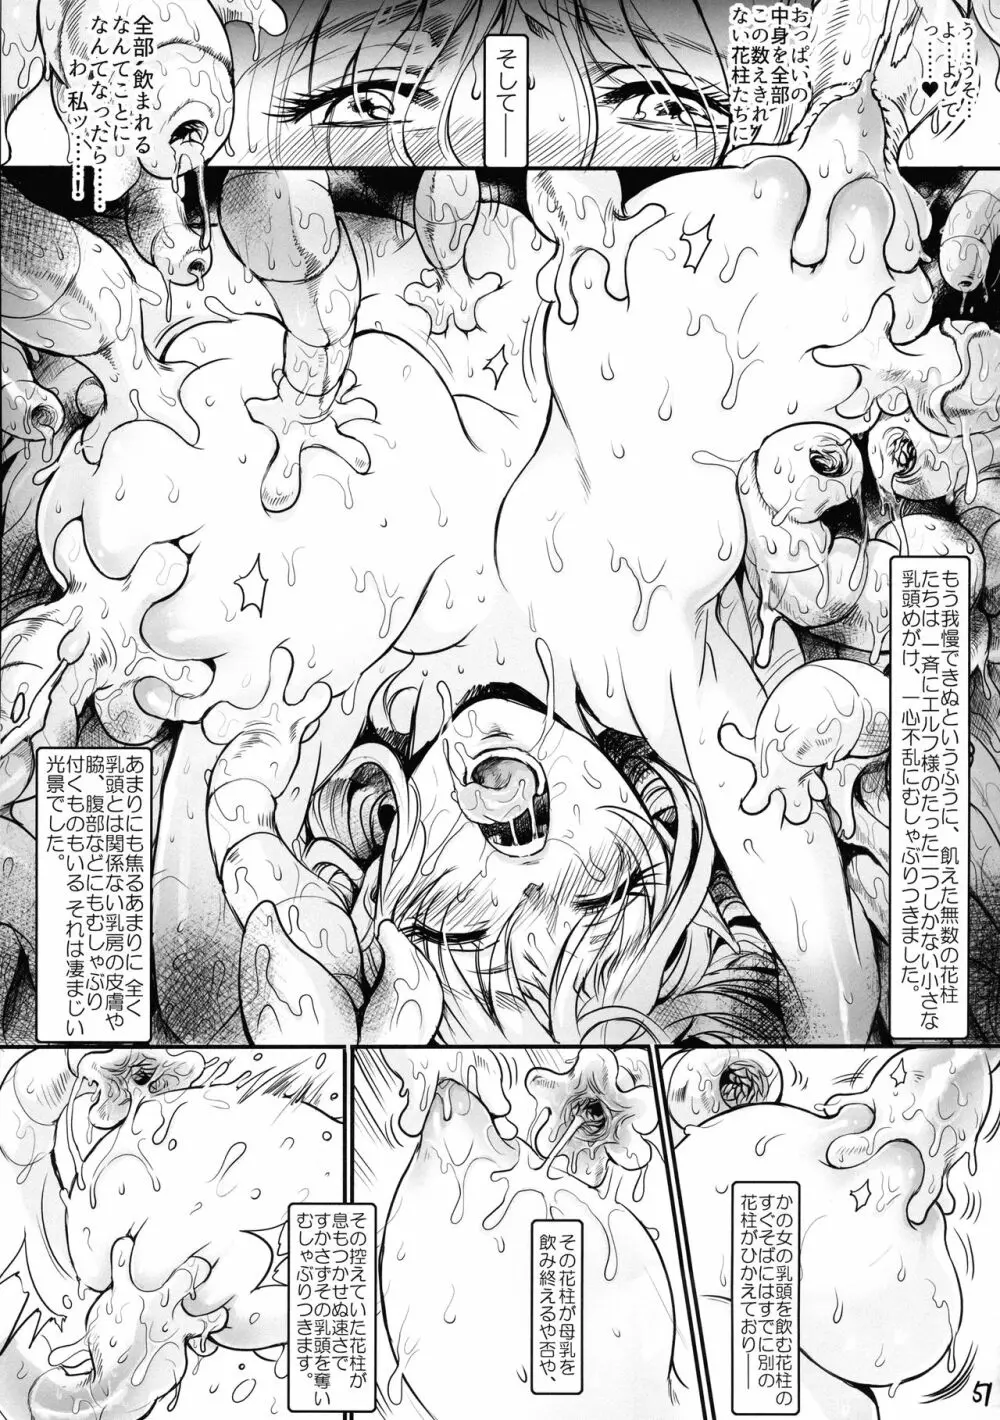 ボツ漫画「可愛い奥様」のご供養まとめ本+α 51ページ